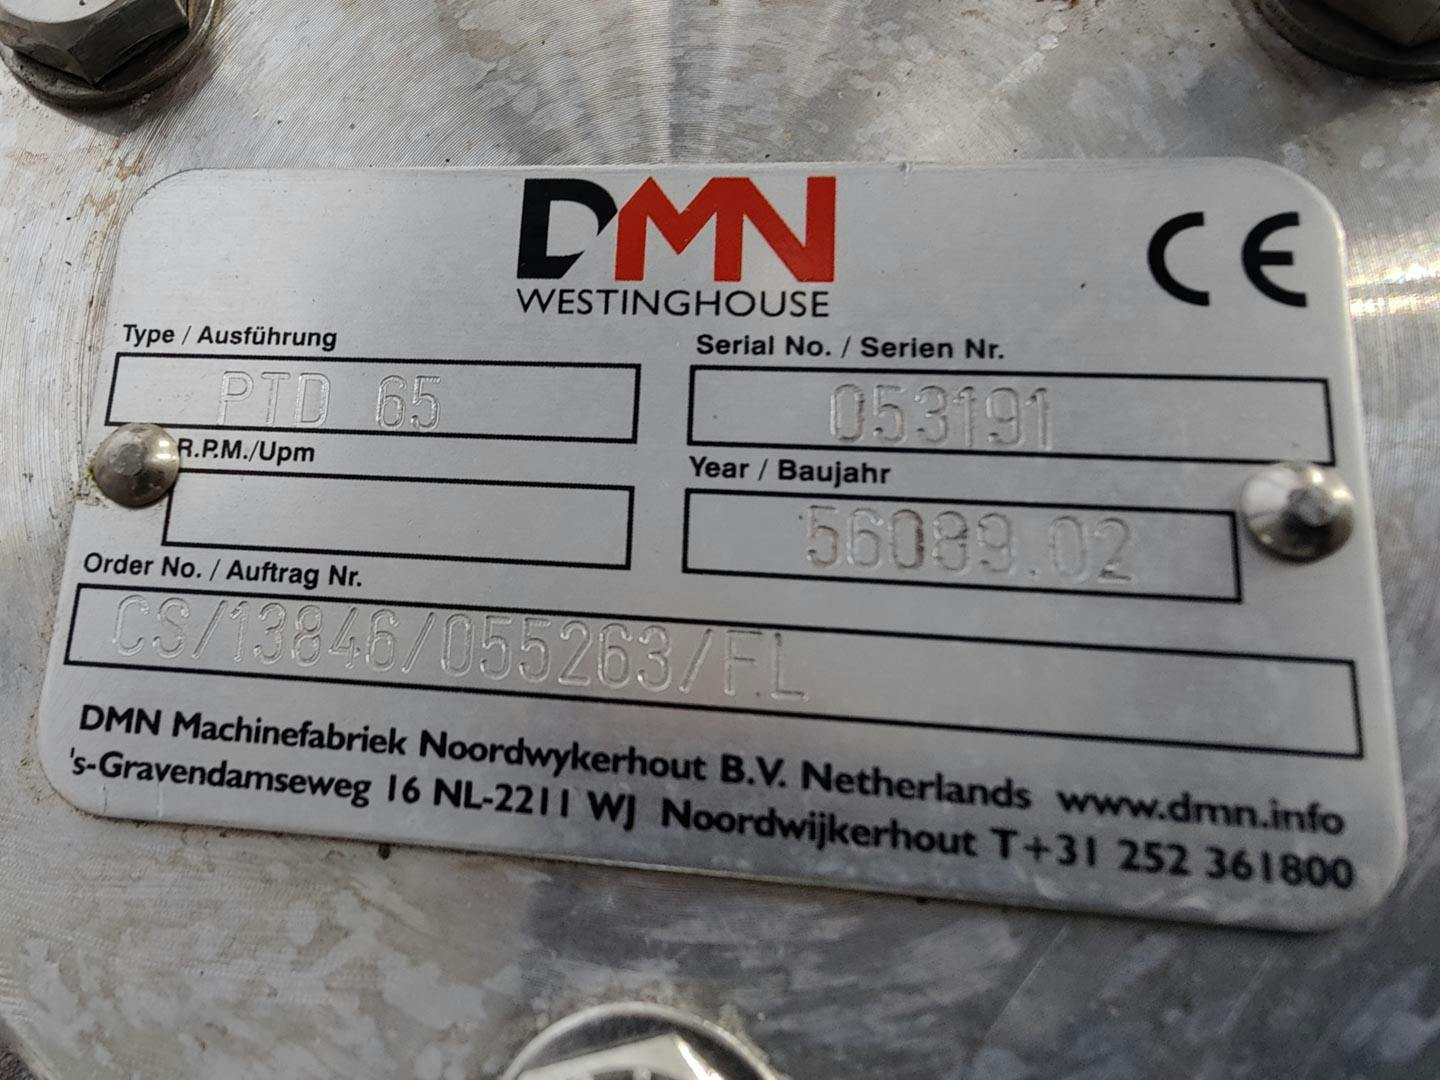 DMN Westinghouse PTD 65 - Diverter valve - image 12